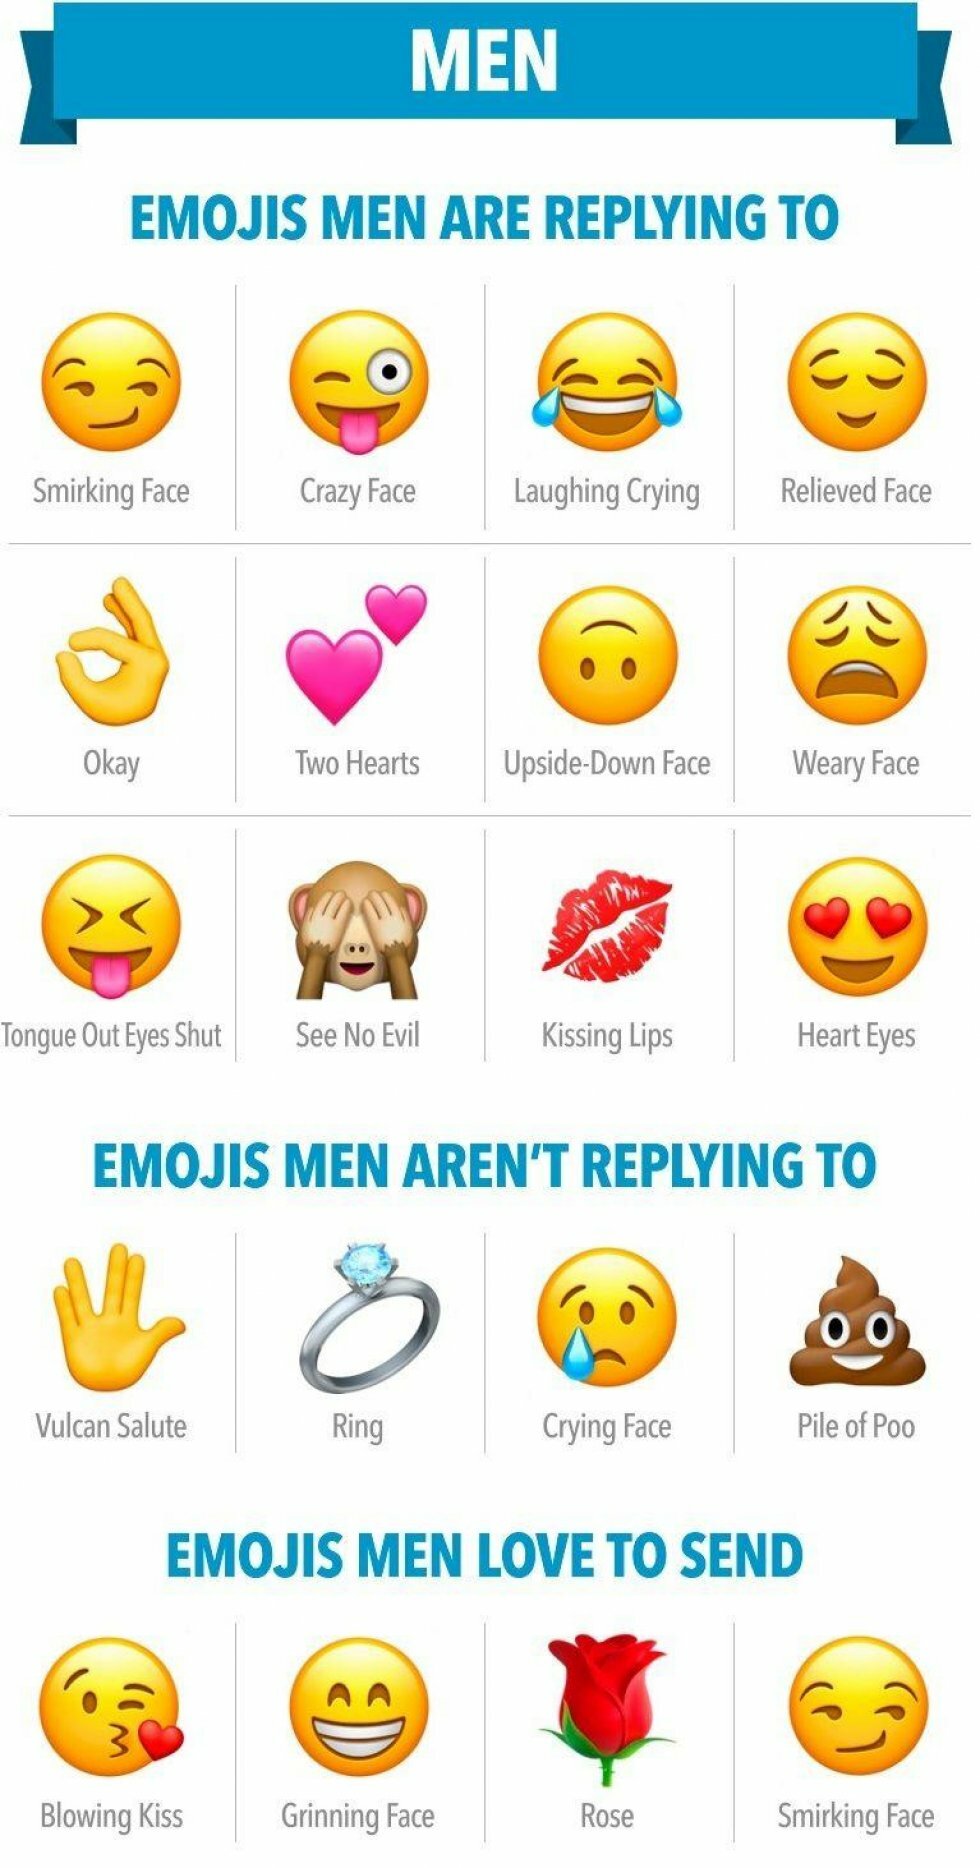 Clover.co - Disse emojis skal du bruge hvis du vil score